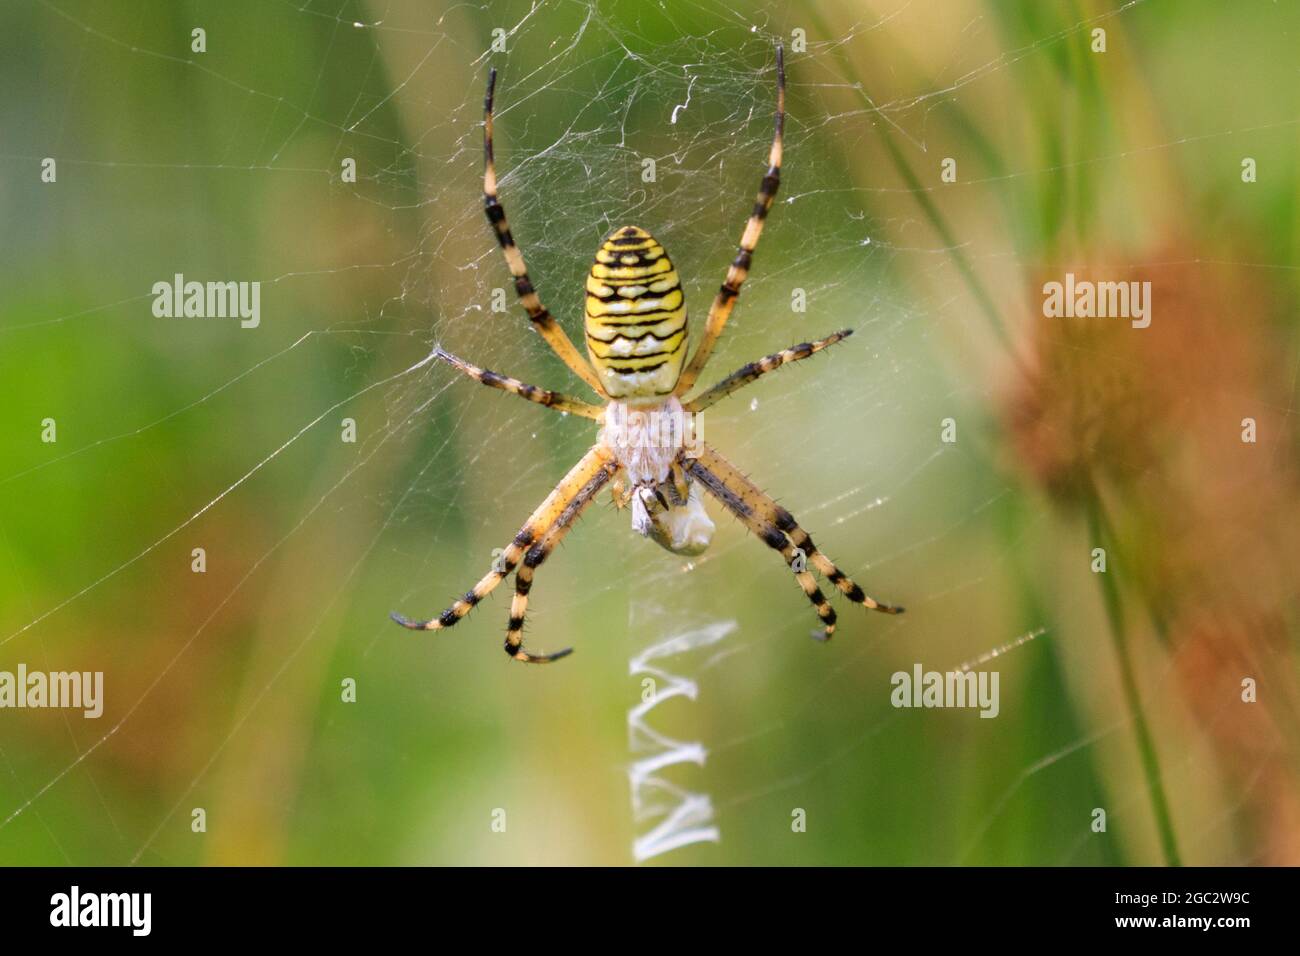 Araña de avispa (Argiope bruennichi), lado dorsal de araña de jardín amarilla y negra en tela, con decoración de tela en zigzag (stabientum), Alemania Foto de stock